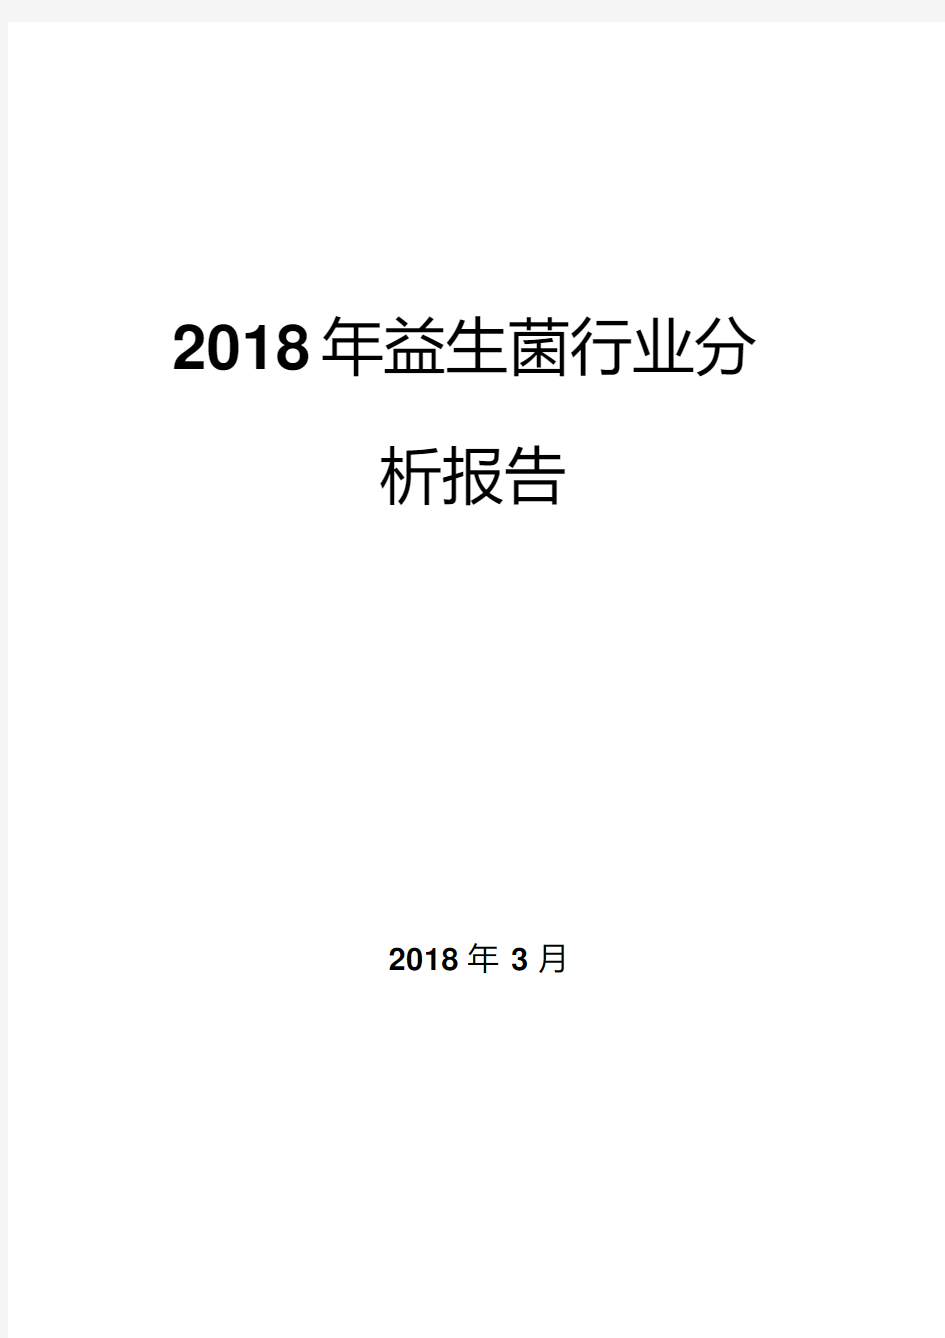 2018年益生菌行业分析报告